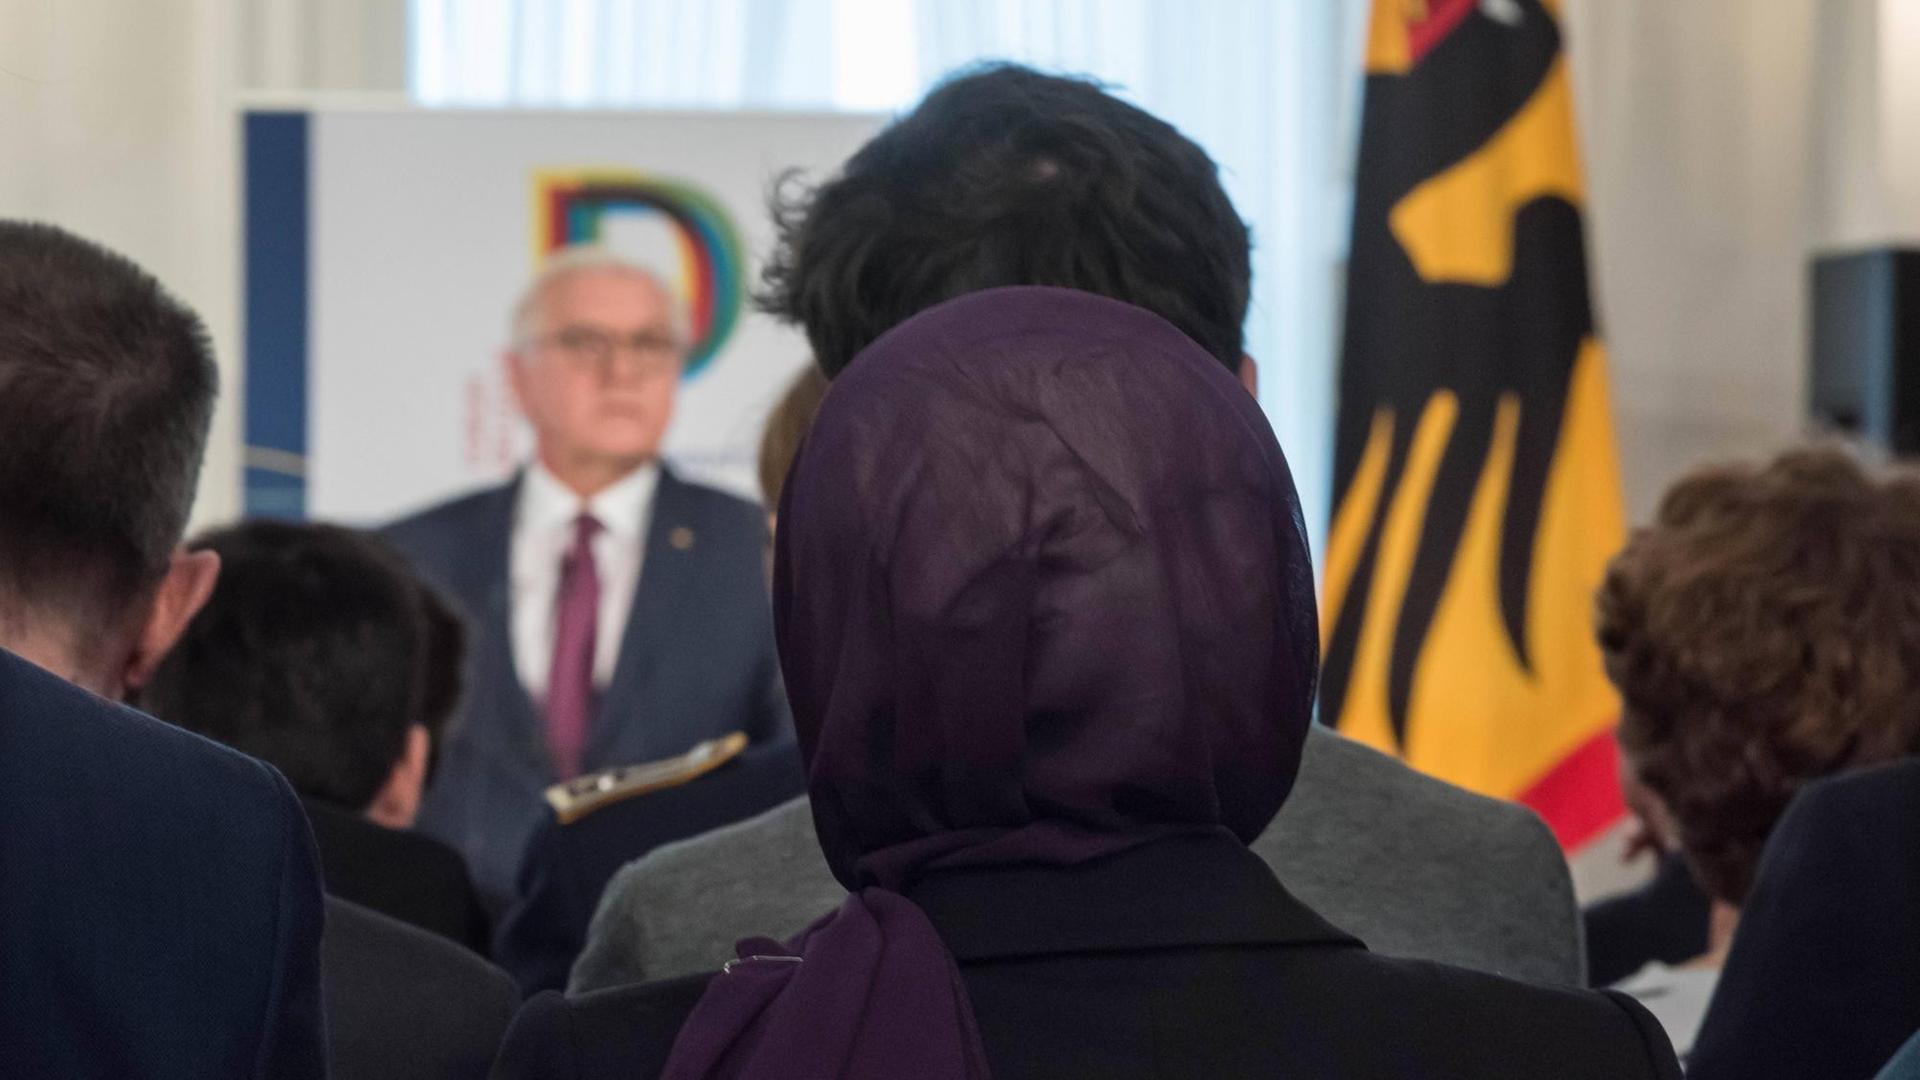 Ort der gepflegten Debatte - Bundespräsident Frank-Walter Steinmeier lud am Dienstag (26.02.2019) zur Diskussion über das Thema "Religion und Demokratie" ins Schloss Bellevue